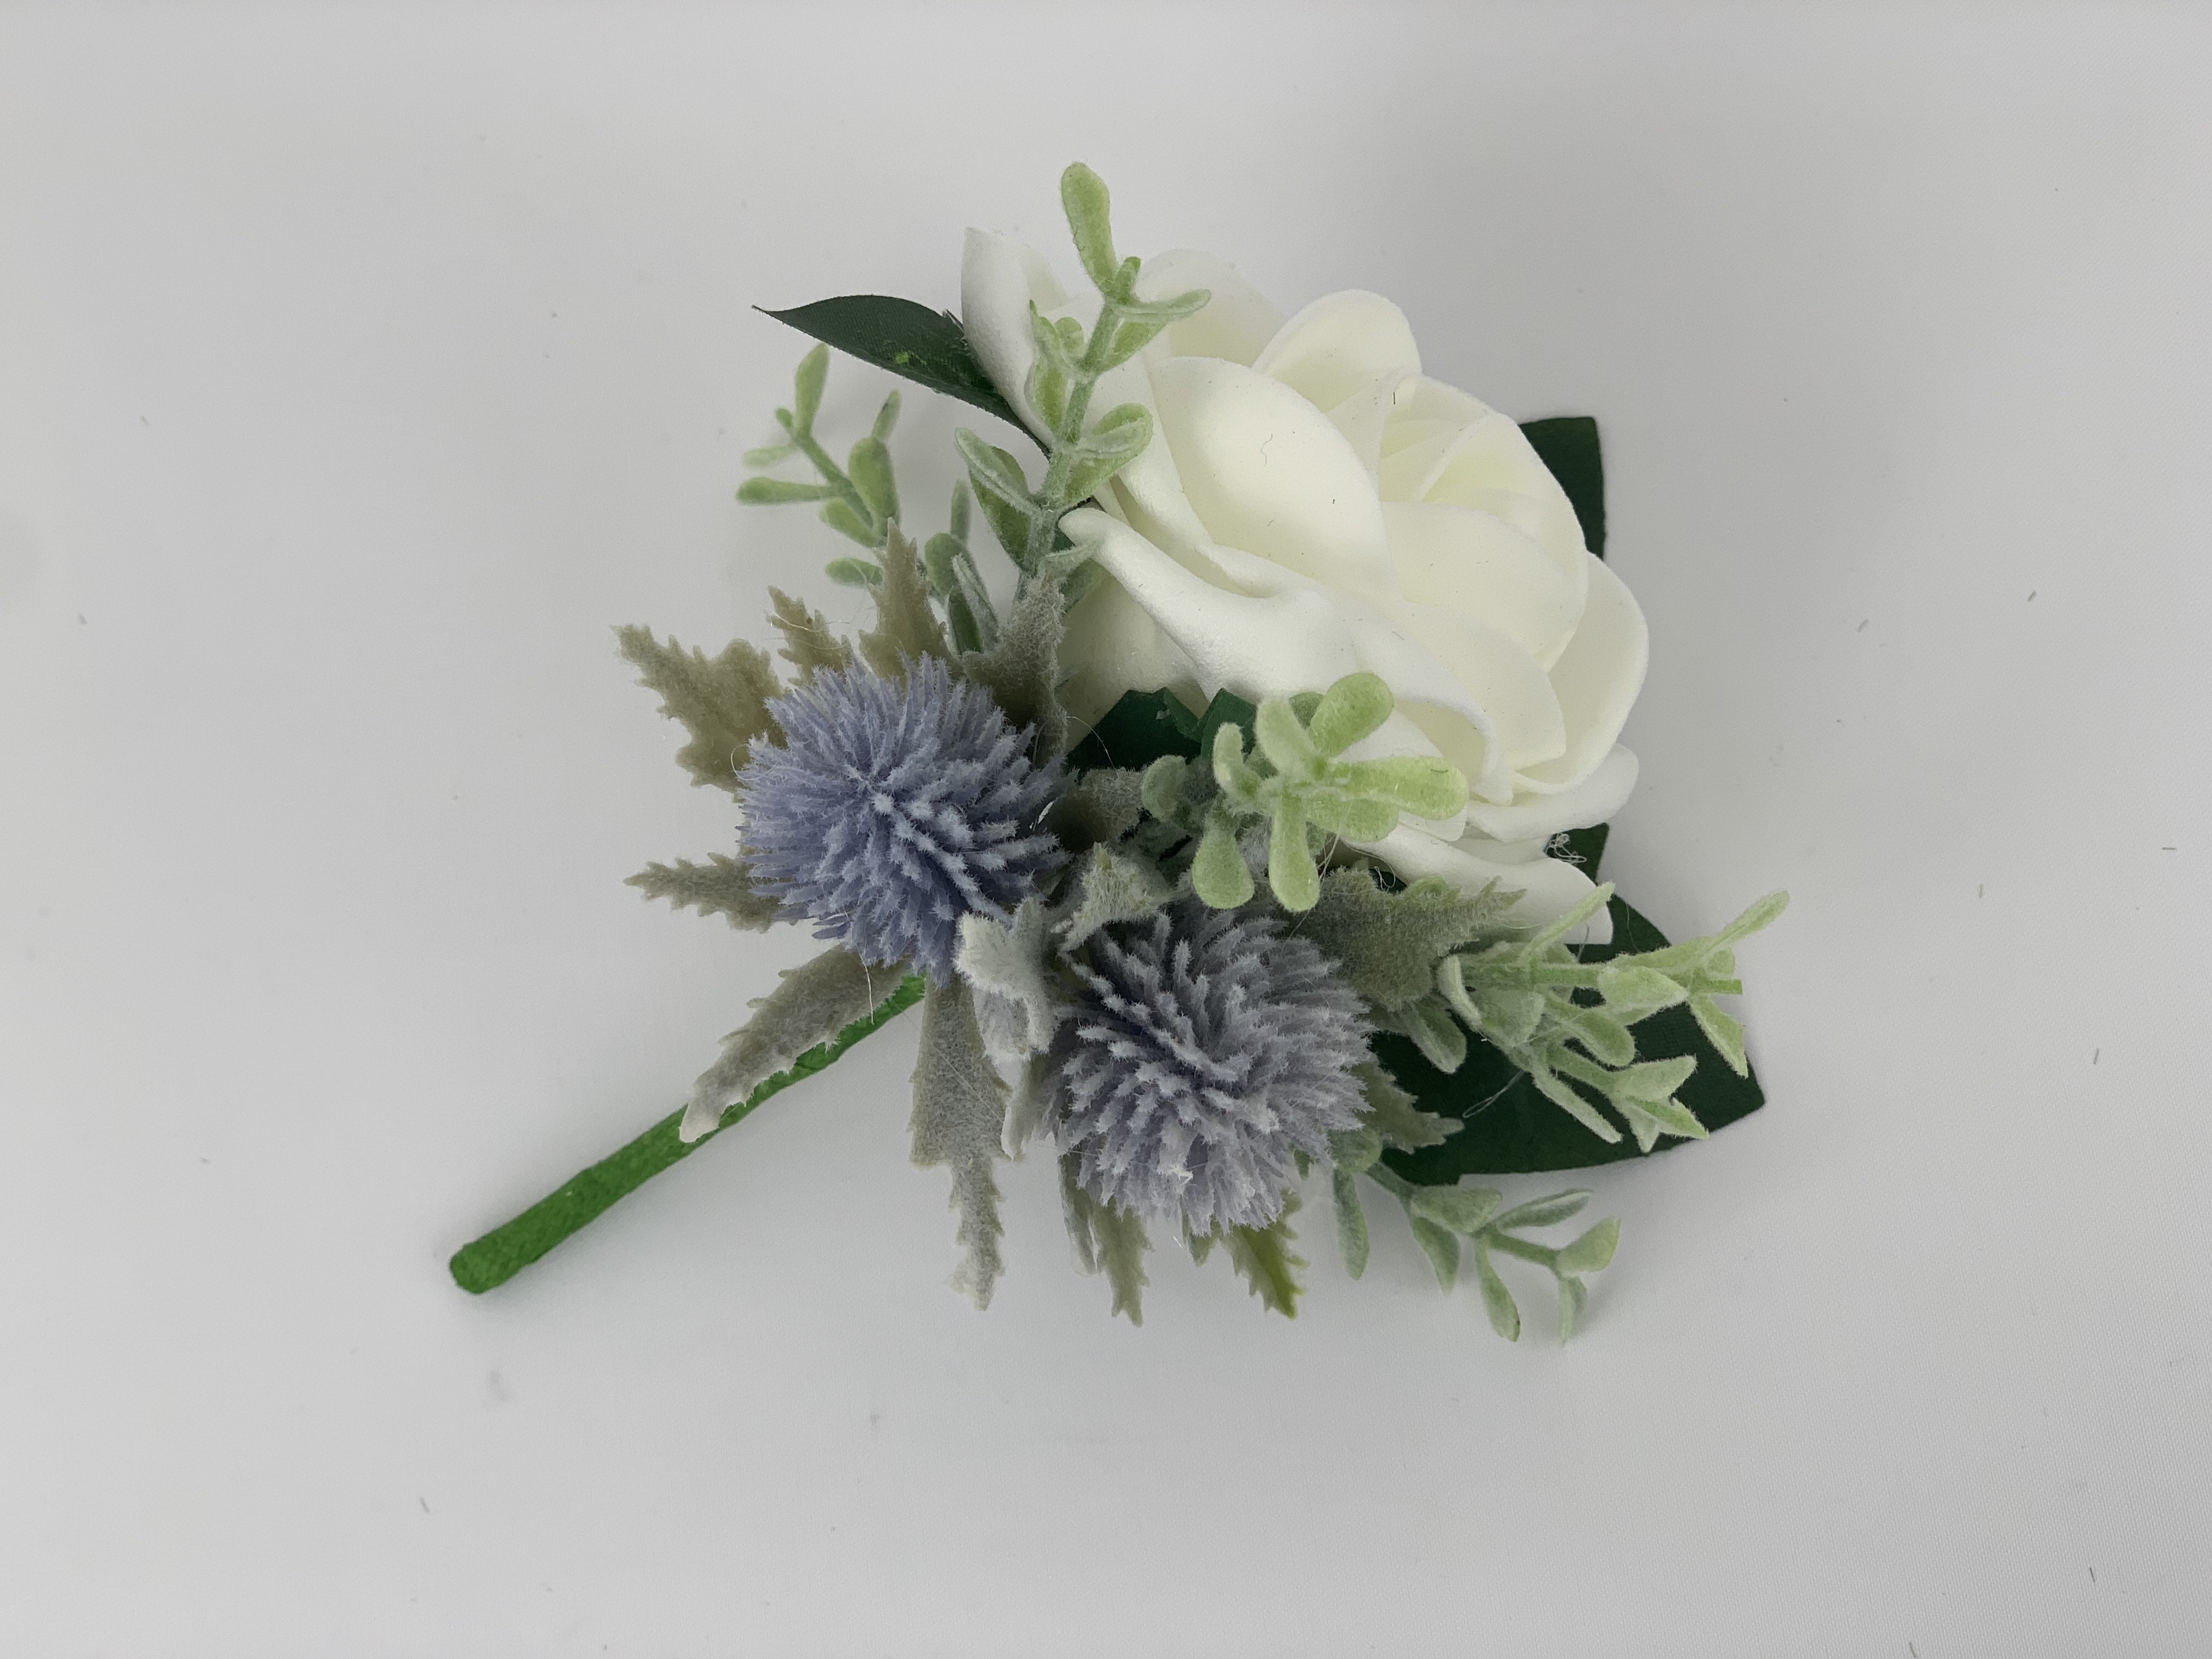 10 x Scottish Wedding Flowers Buttonhole Rose Thistle & Gyp With Foliage 